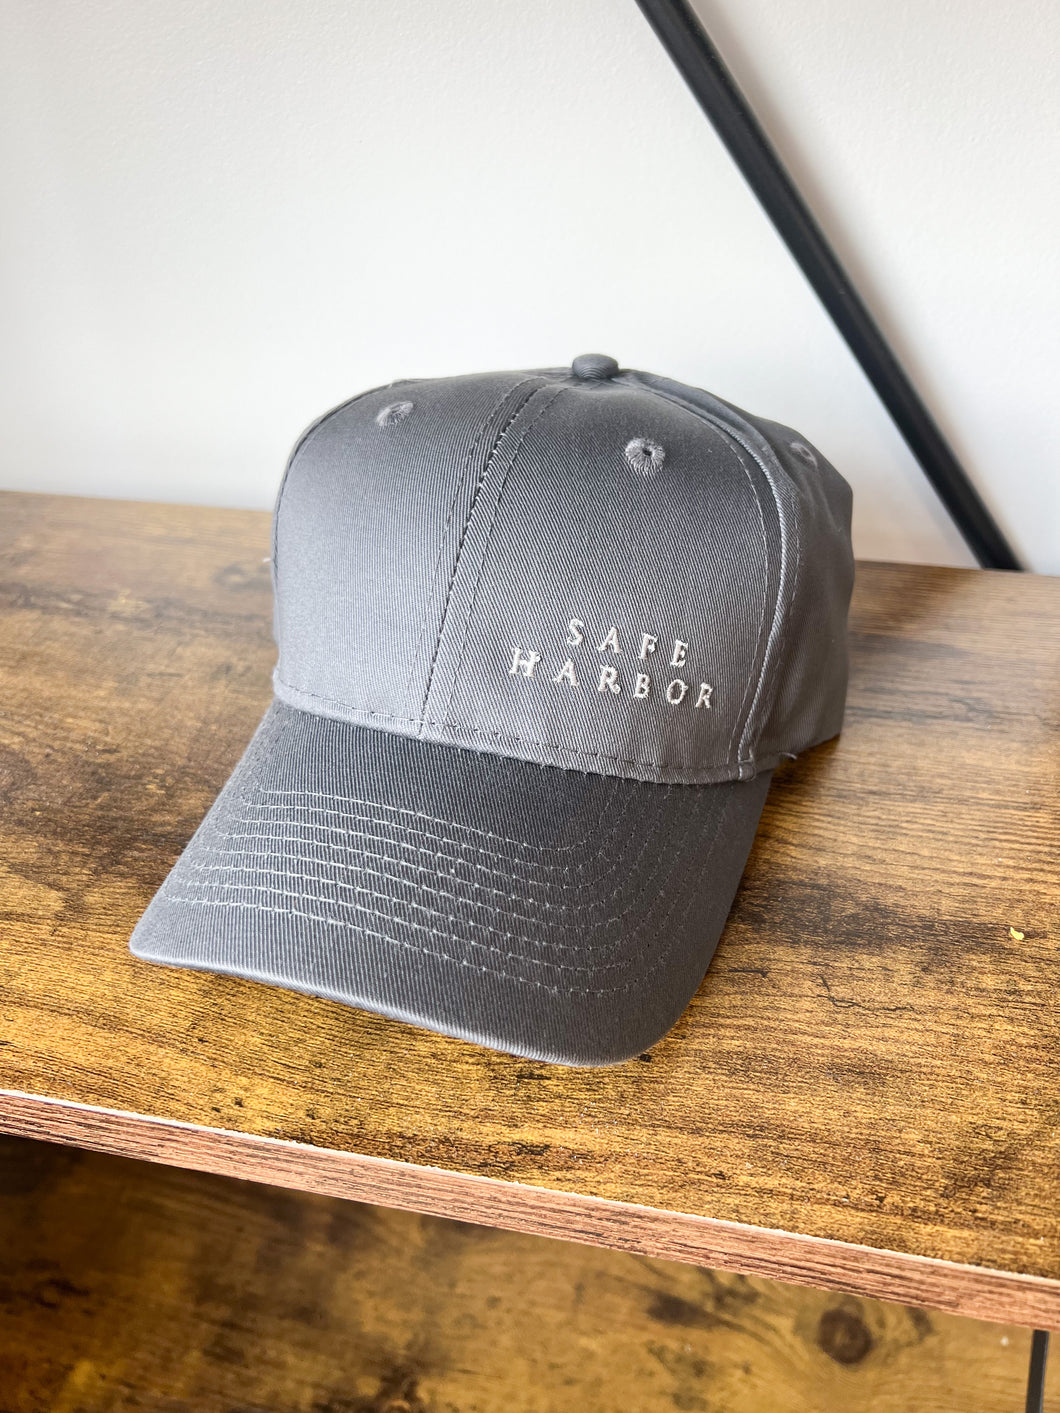 Safe Harbor Embroidered Hat